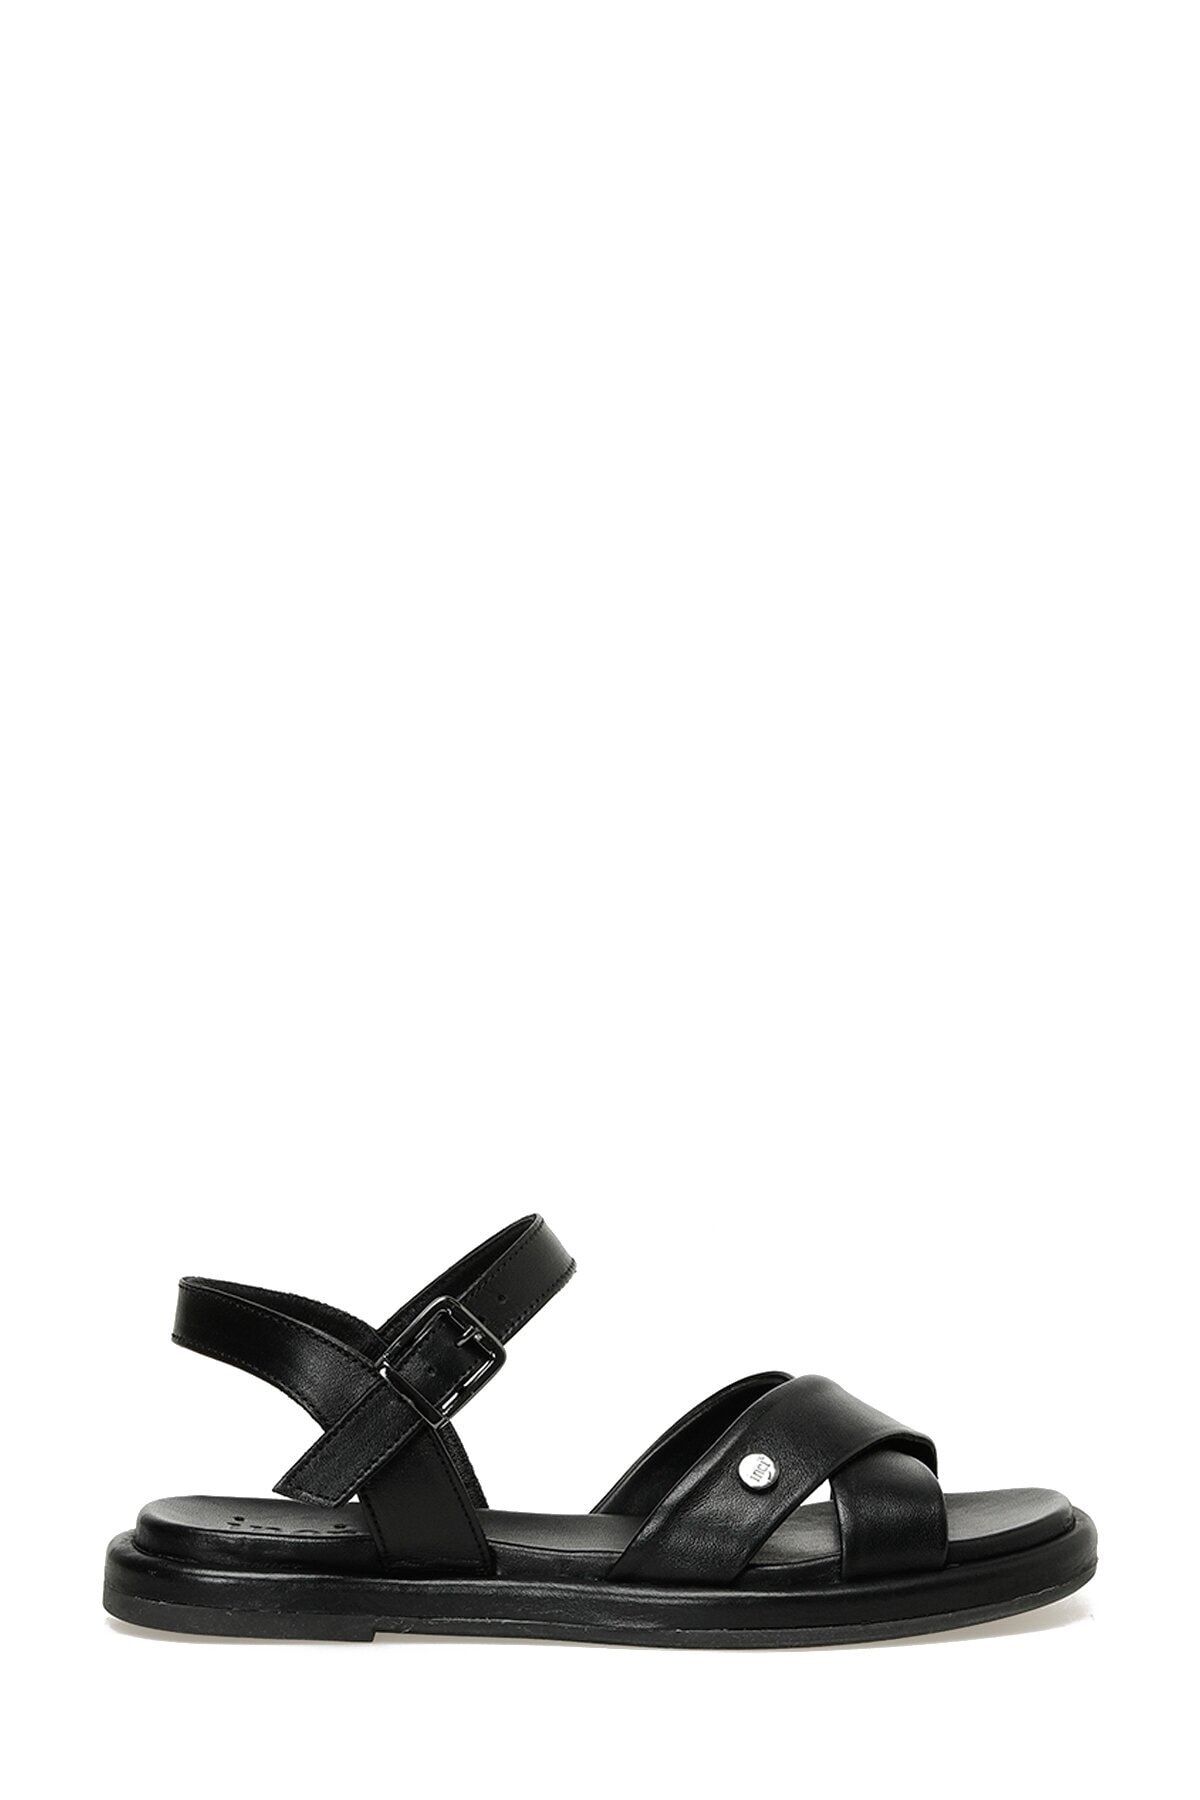 İnci Nyla 3fx Siyah Kadın Düz Sandalet